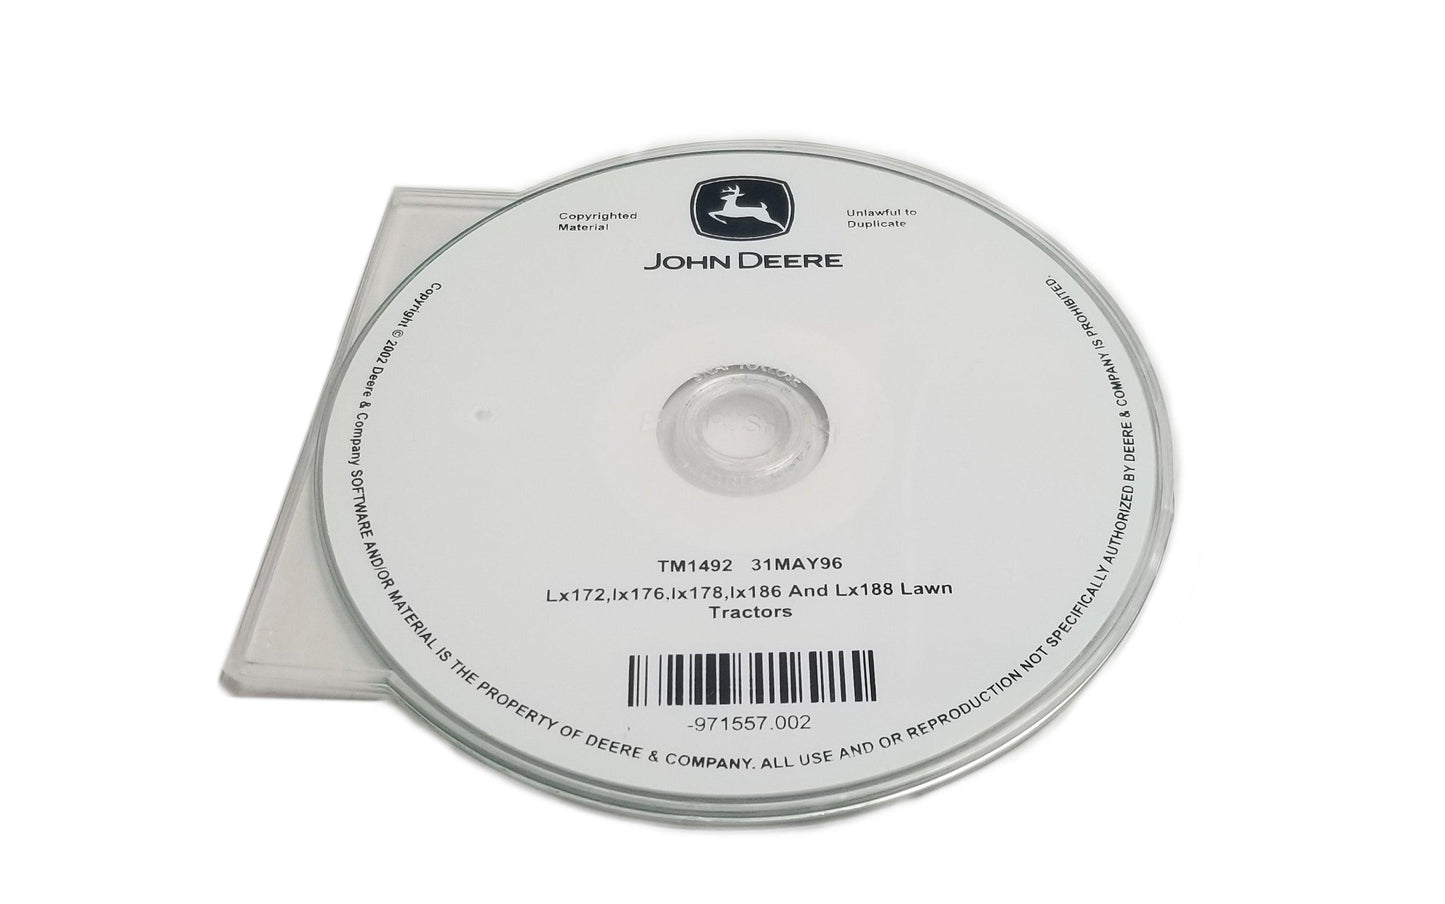 John Deere LX172/LX173/LX176/LX178/LX186/LX188 Lawn Tractors Technical CD Manual - TM1492CD